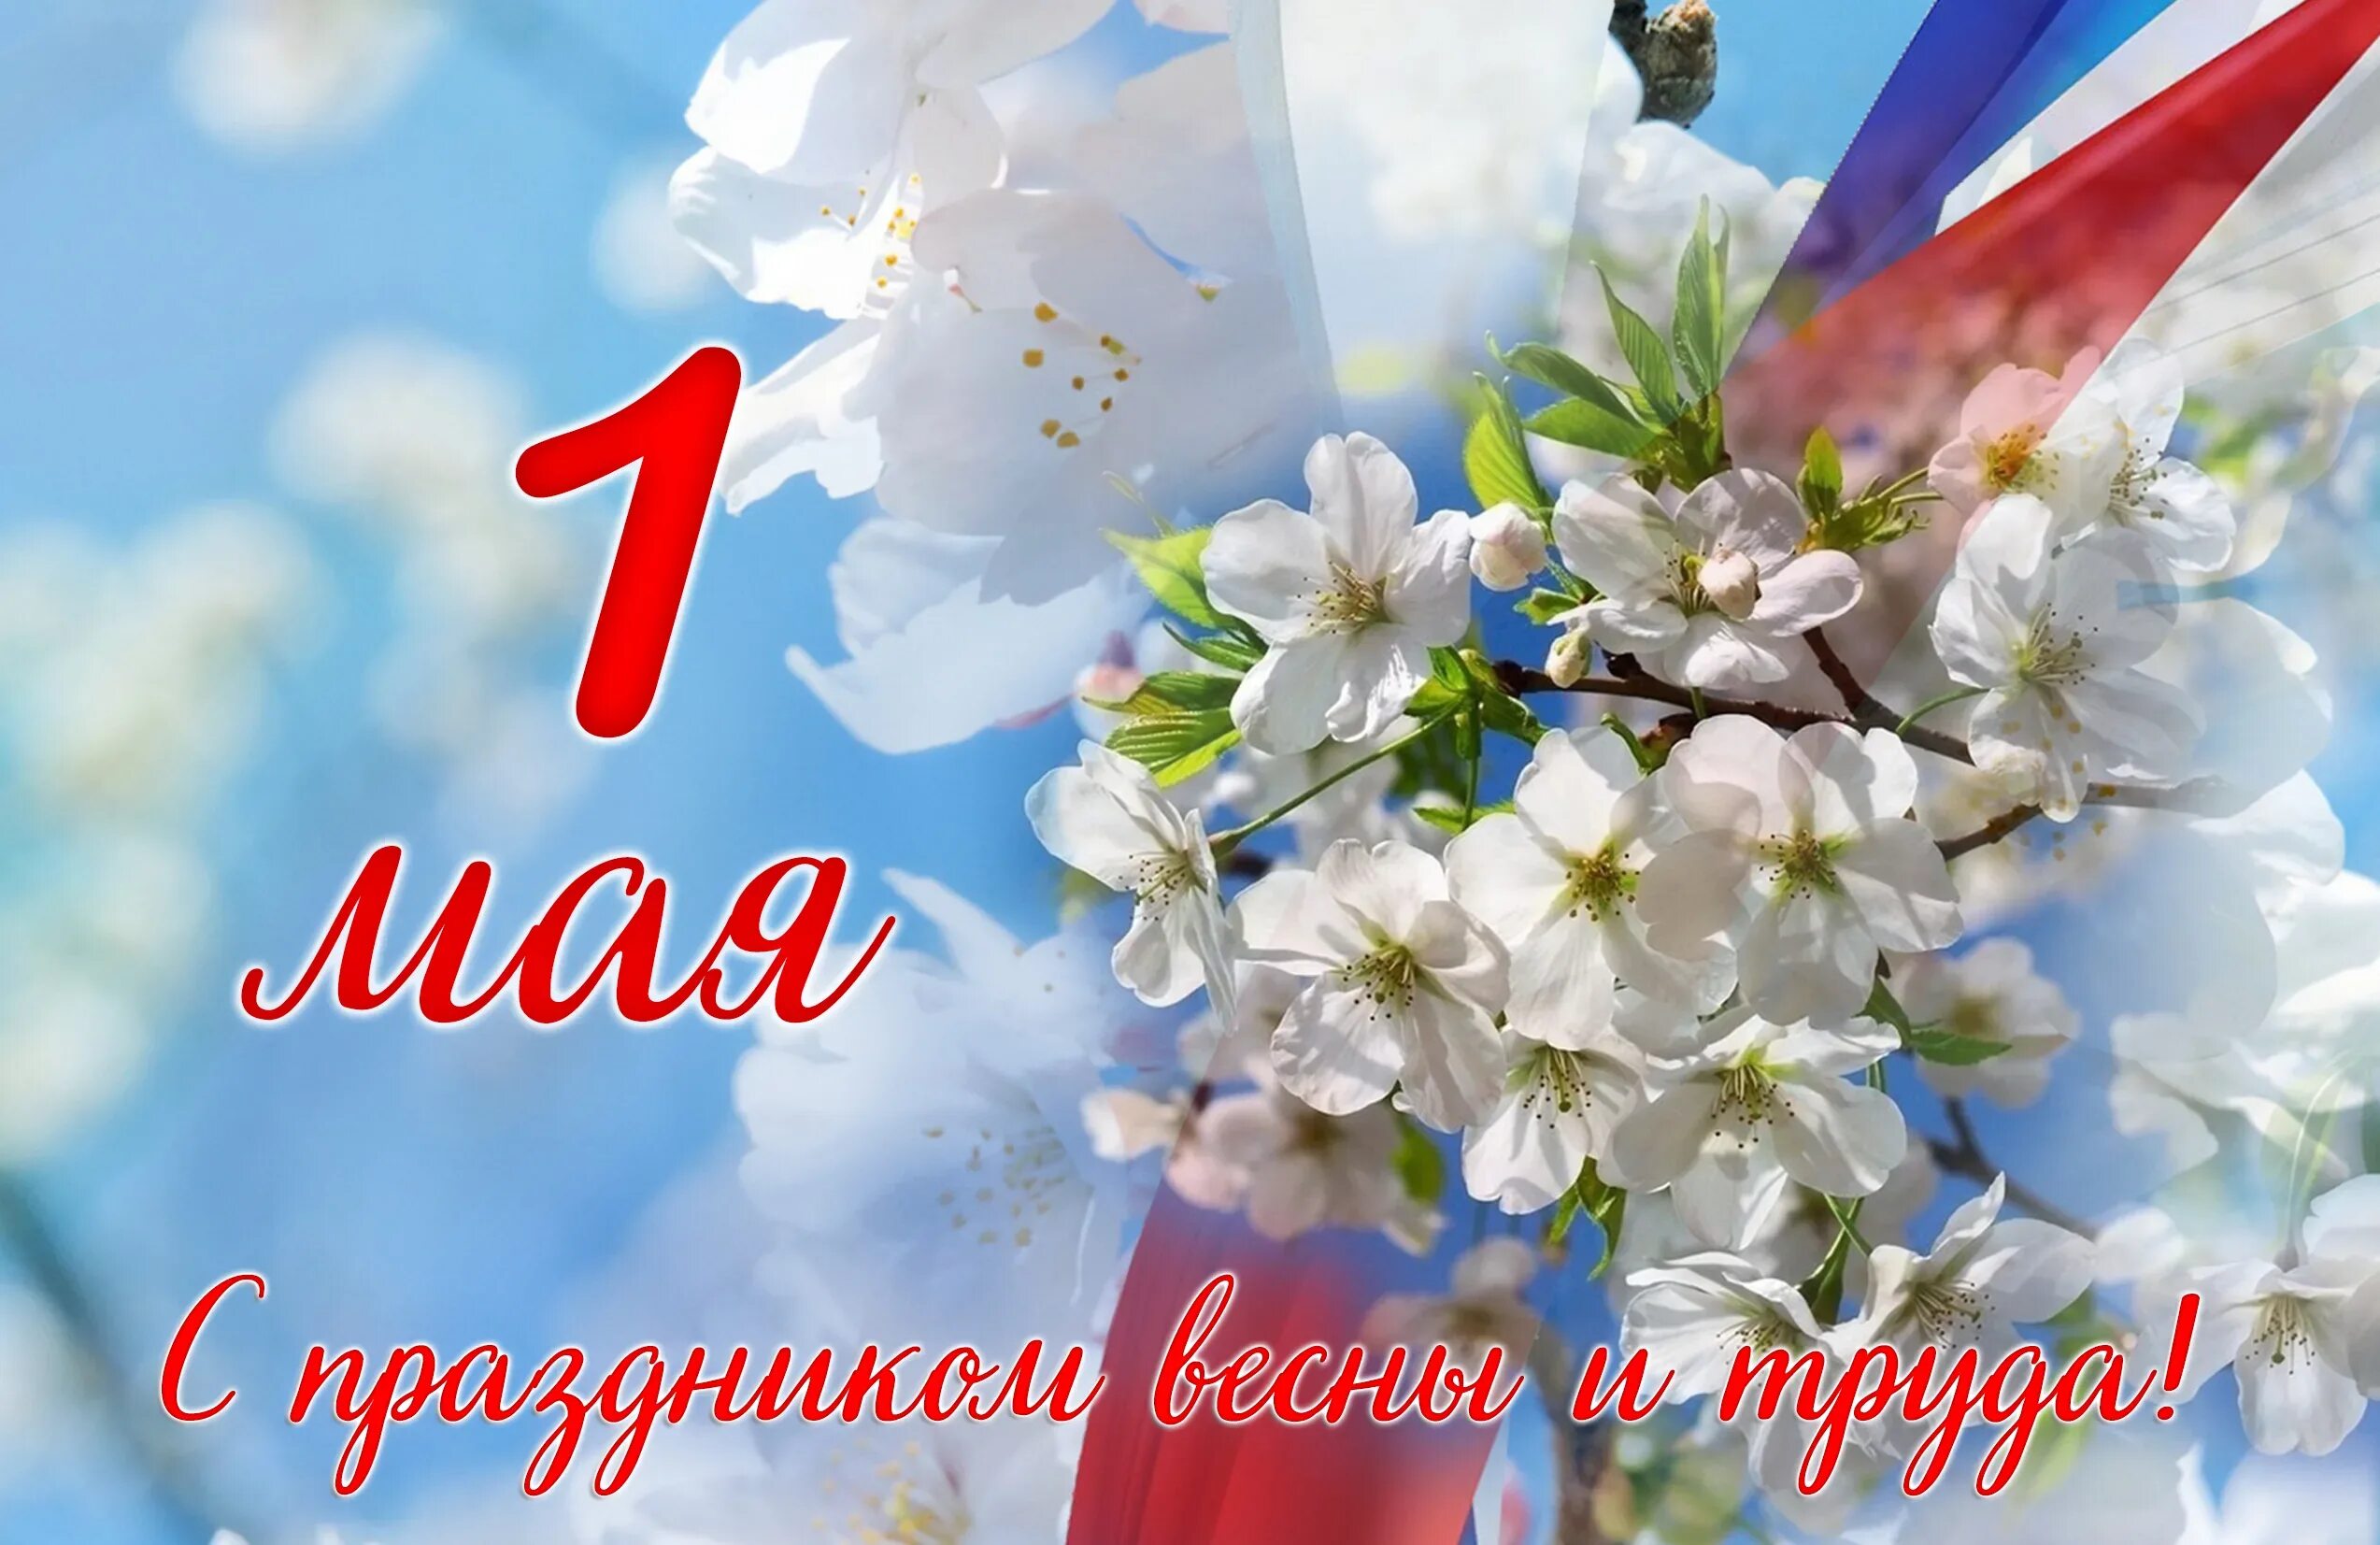 Среда 1 мая. 1 Мая. 1 Мая праздник весны и труда. Поздравление с 1 мая. 1 Мая праздник.